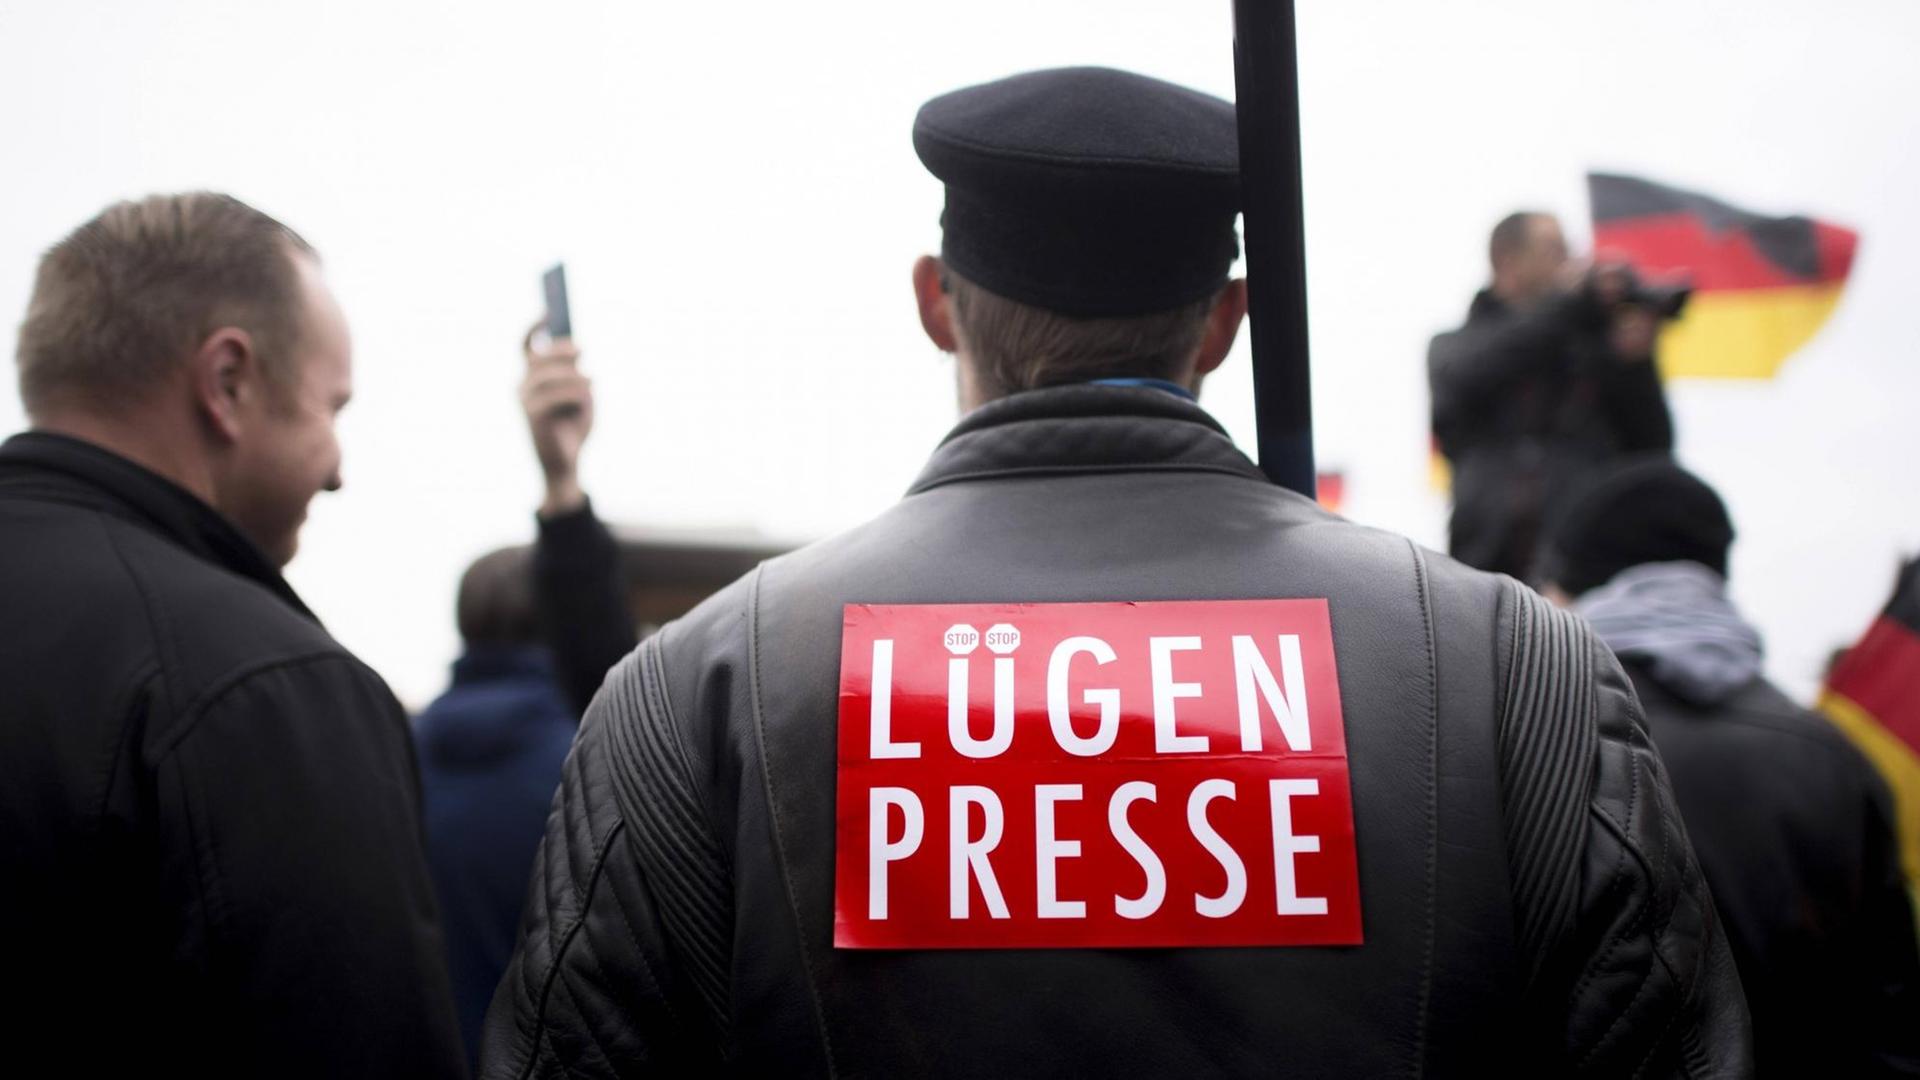 Ein Mann ist von hinten zu sehen. Er trägt eine Schiebermütze und auf seinem Rücken steht "Lügenpresse". Dahinter ist eine Deutschlandfahne zu sehen.